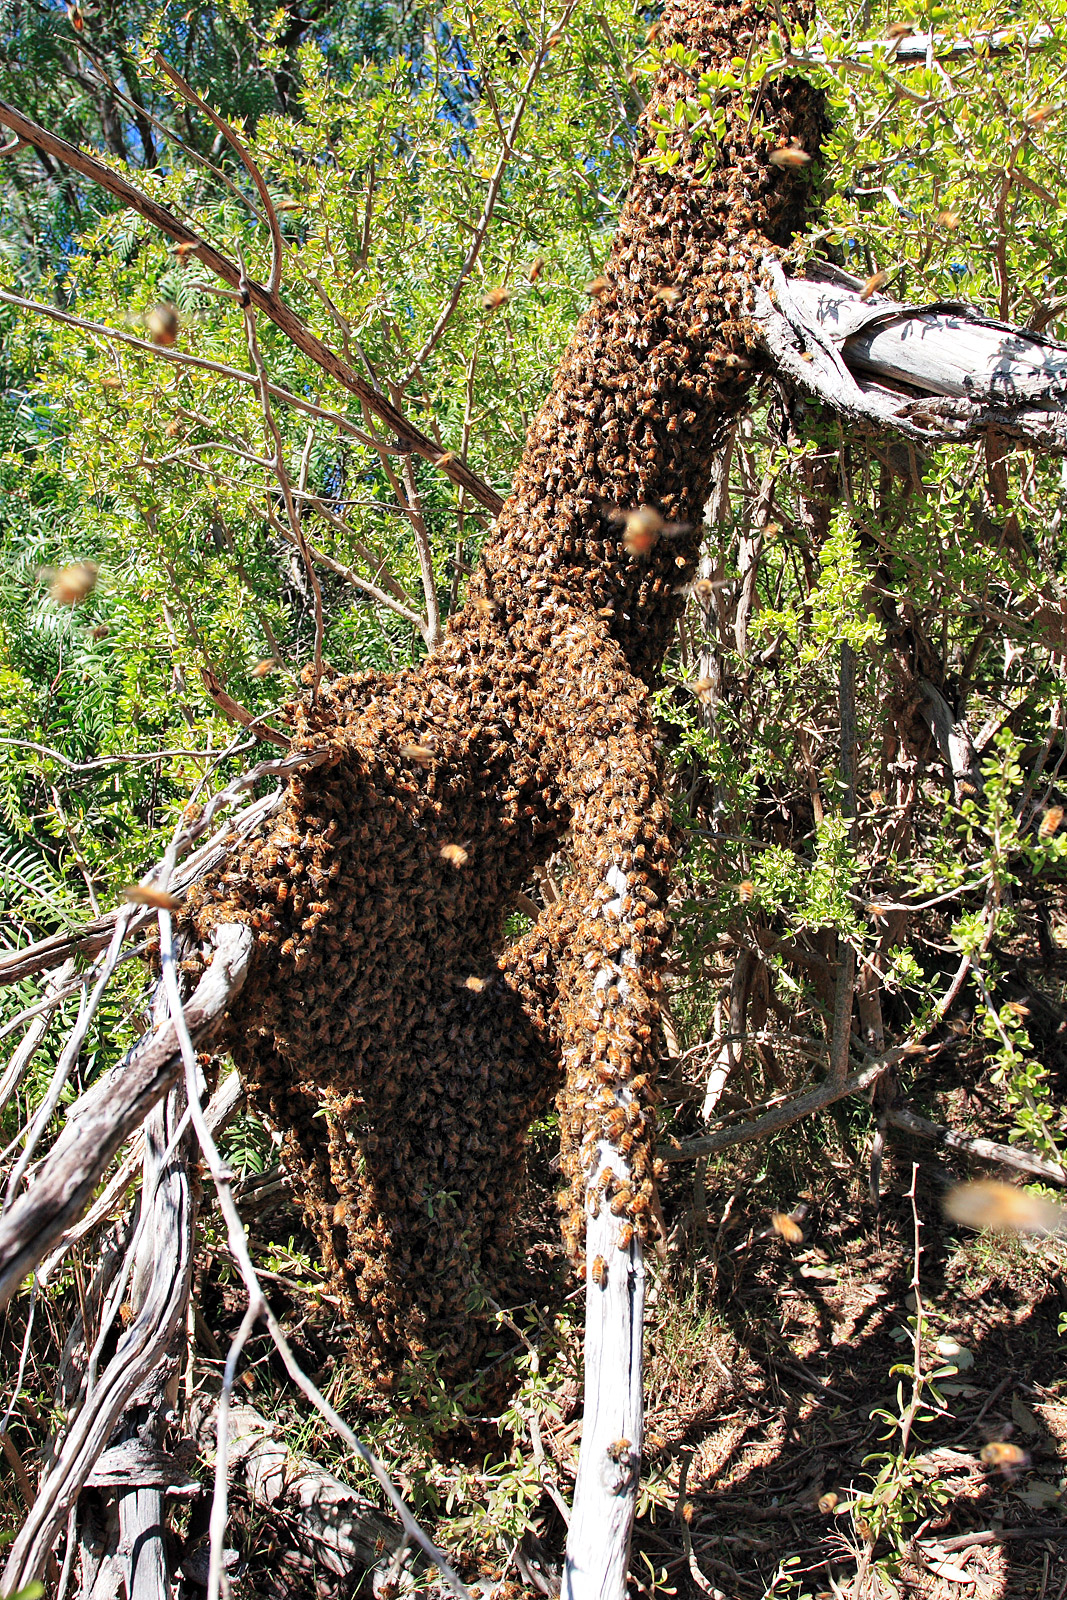 https://commons.wikimedia.org/wiki/File:Bee_swarm_on_fallen_tree03.jpg